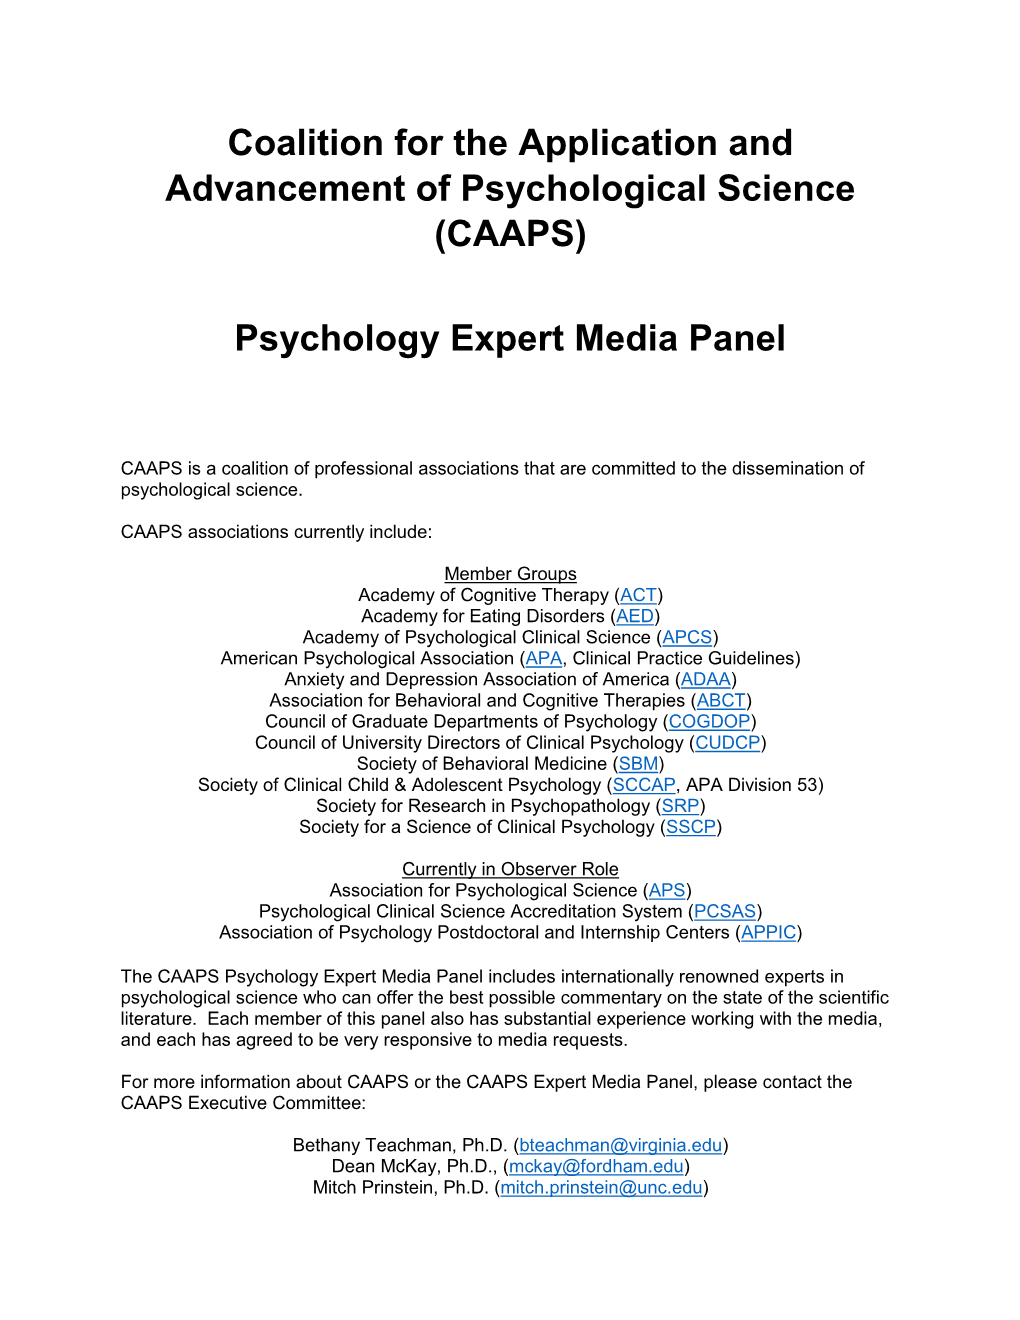 Psychology Expert Media Panel